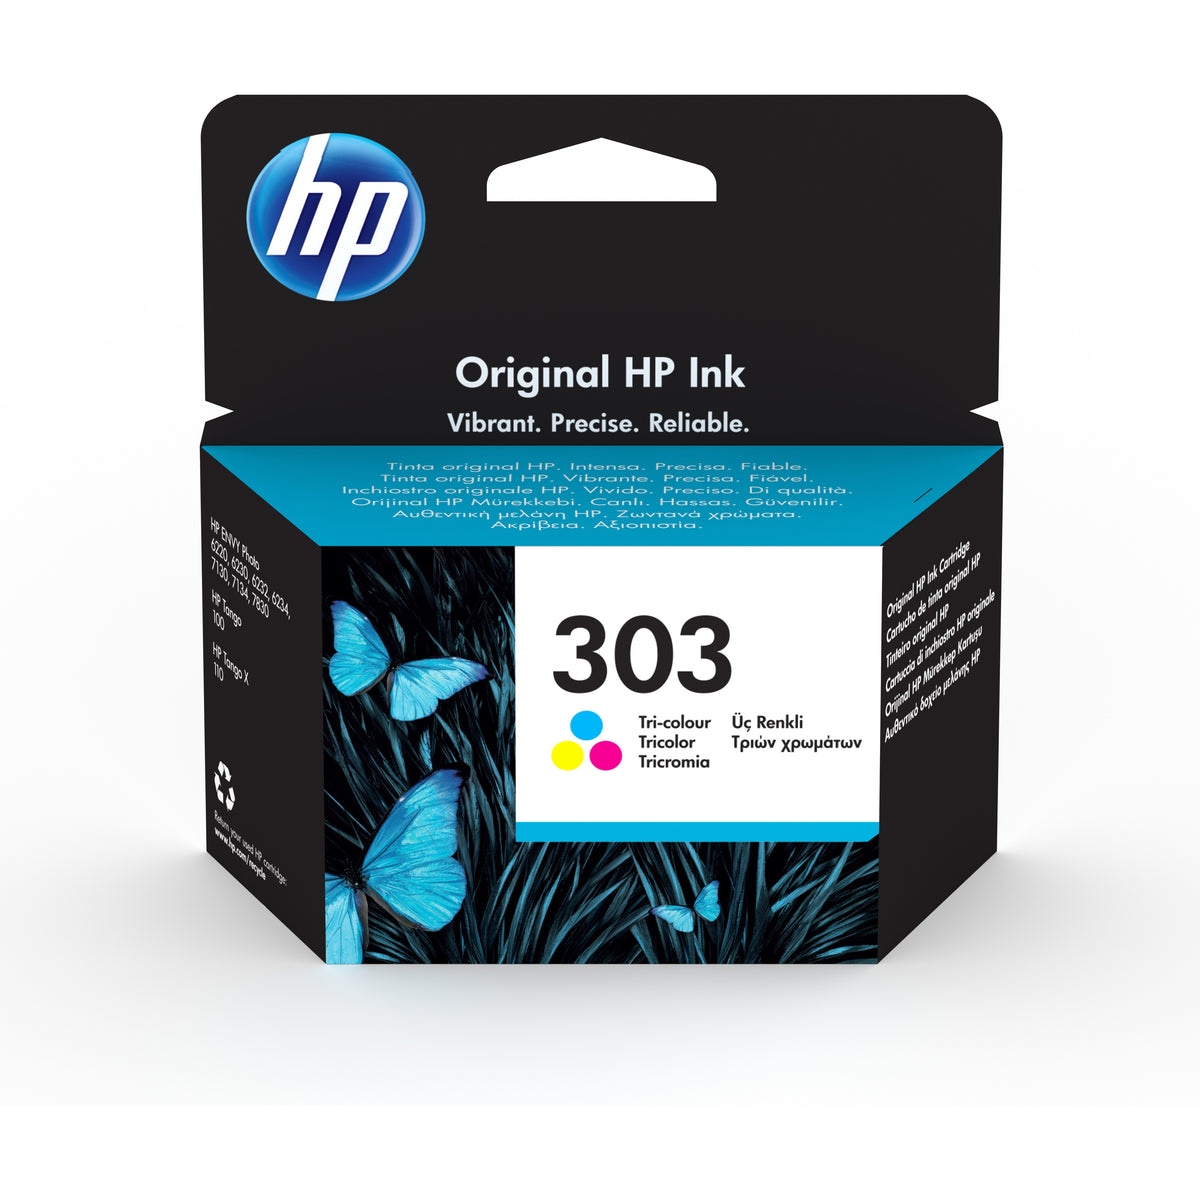 HP originálny ink T6N01AE,HP 303,color,165str.